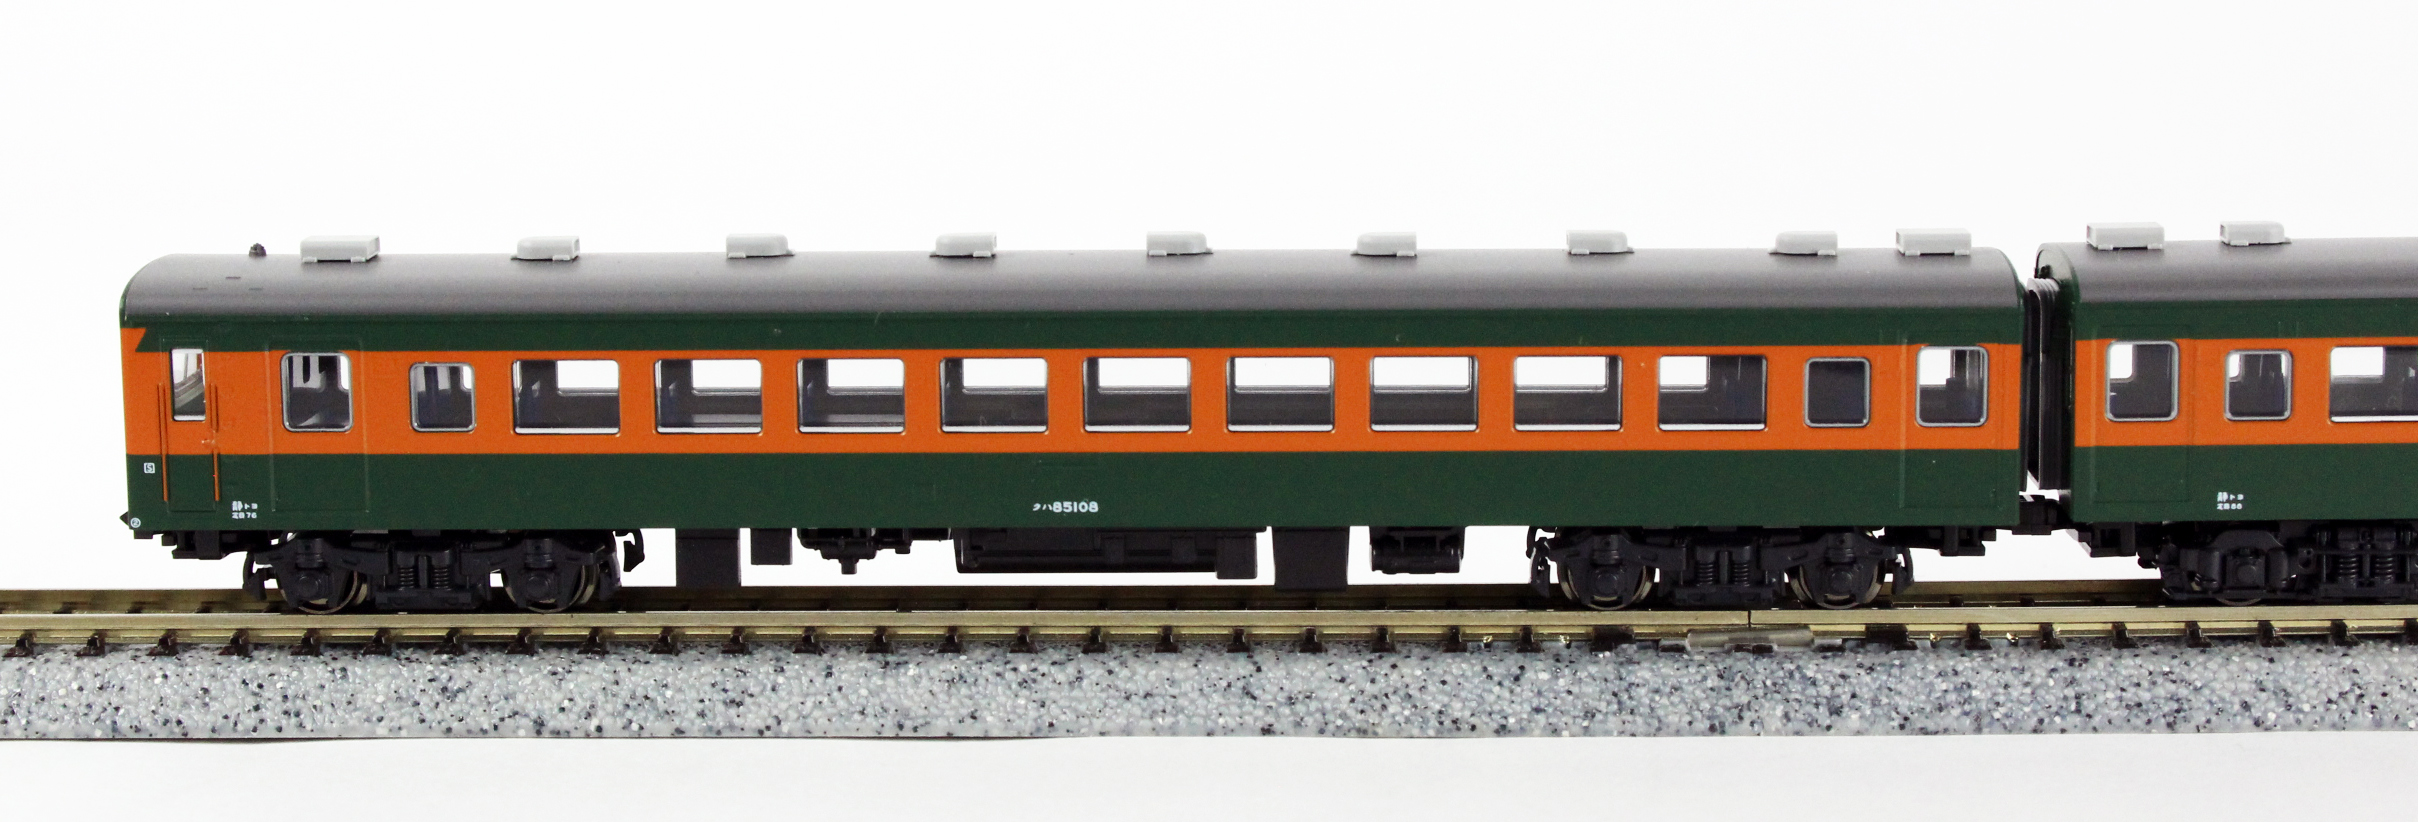 KATO 10-1385 80系300番台 飯田線 6両セット 鉄道模型 Nゲージ 